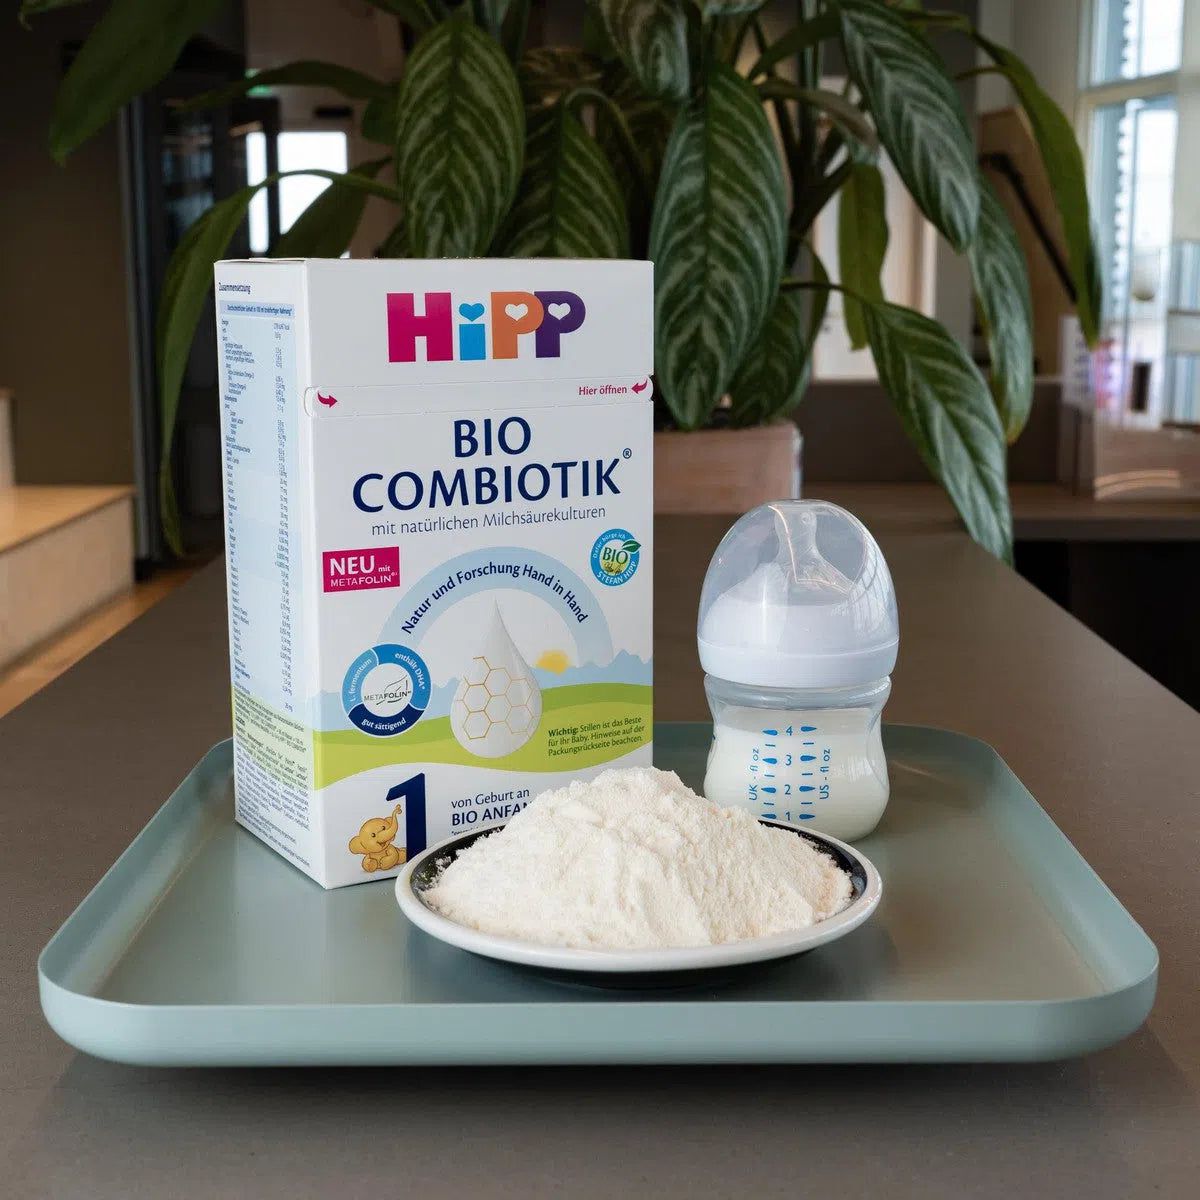 Hipp Bio Combiotik 1 lait initial de naissance, 600g